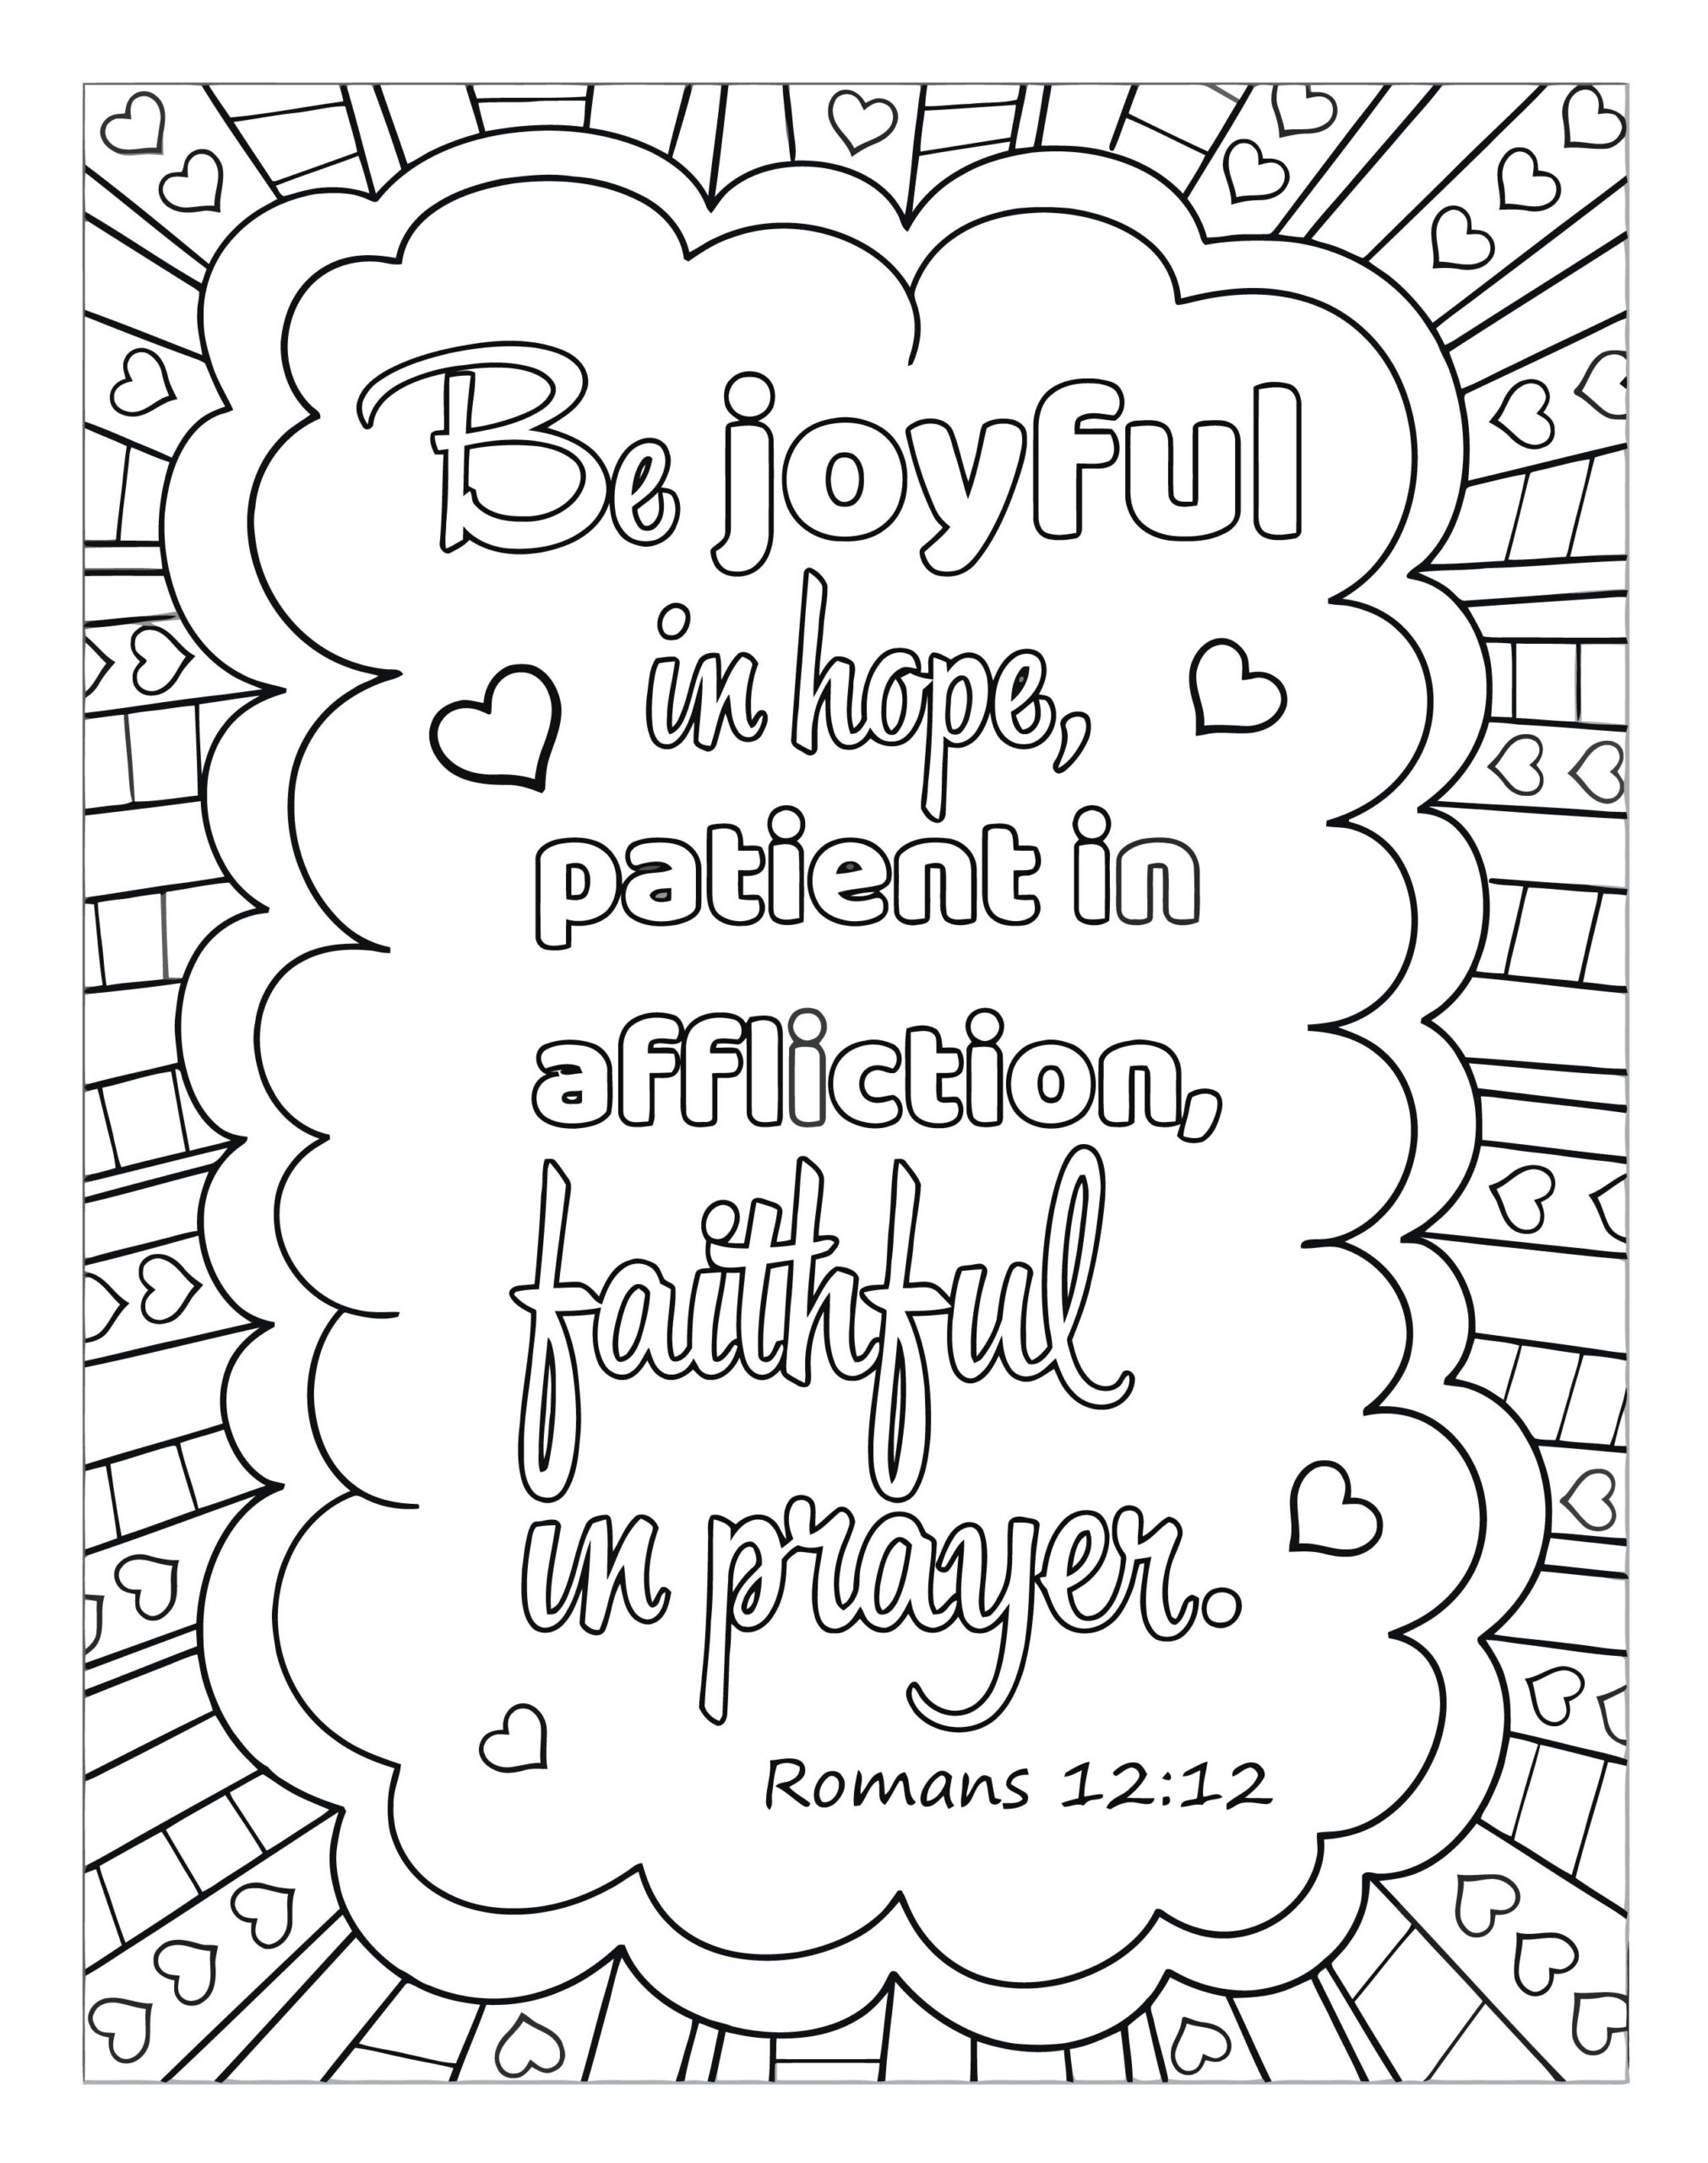 Be joyful in hope – Coloring book